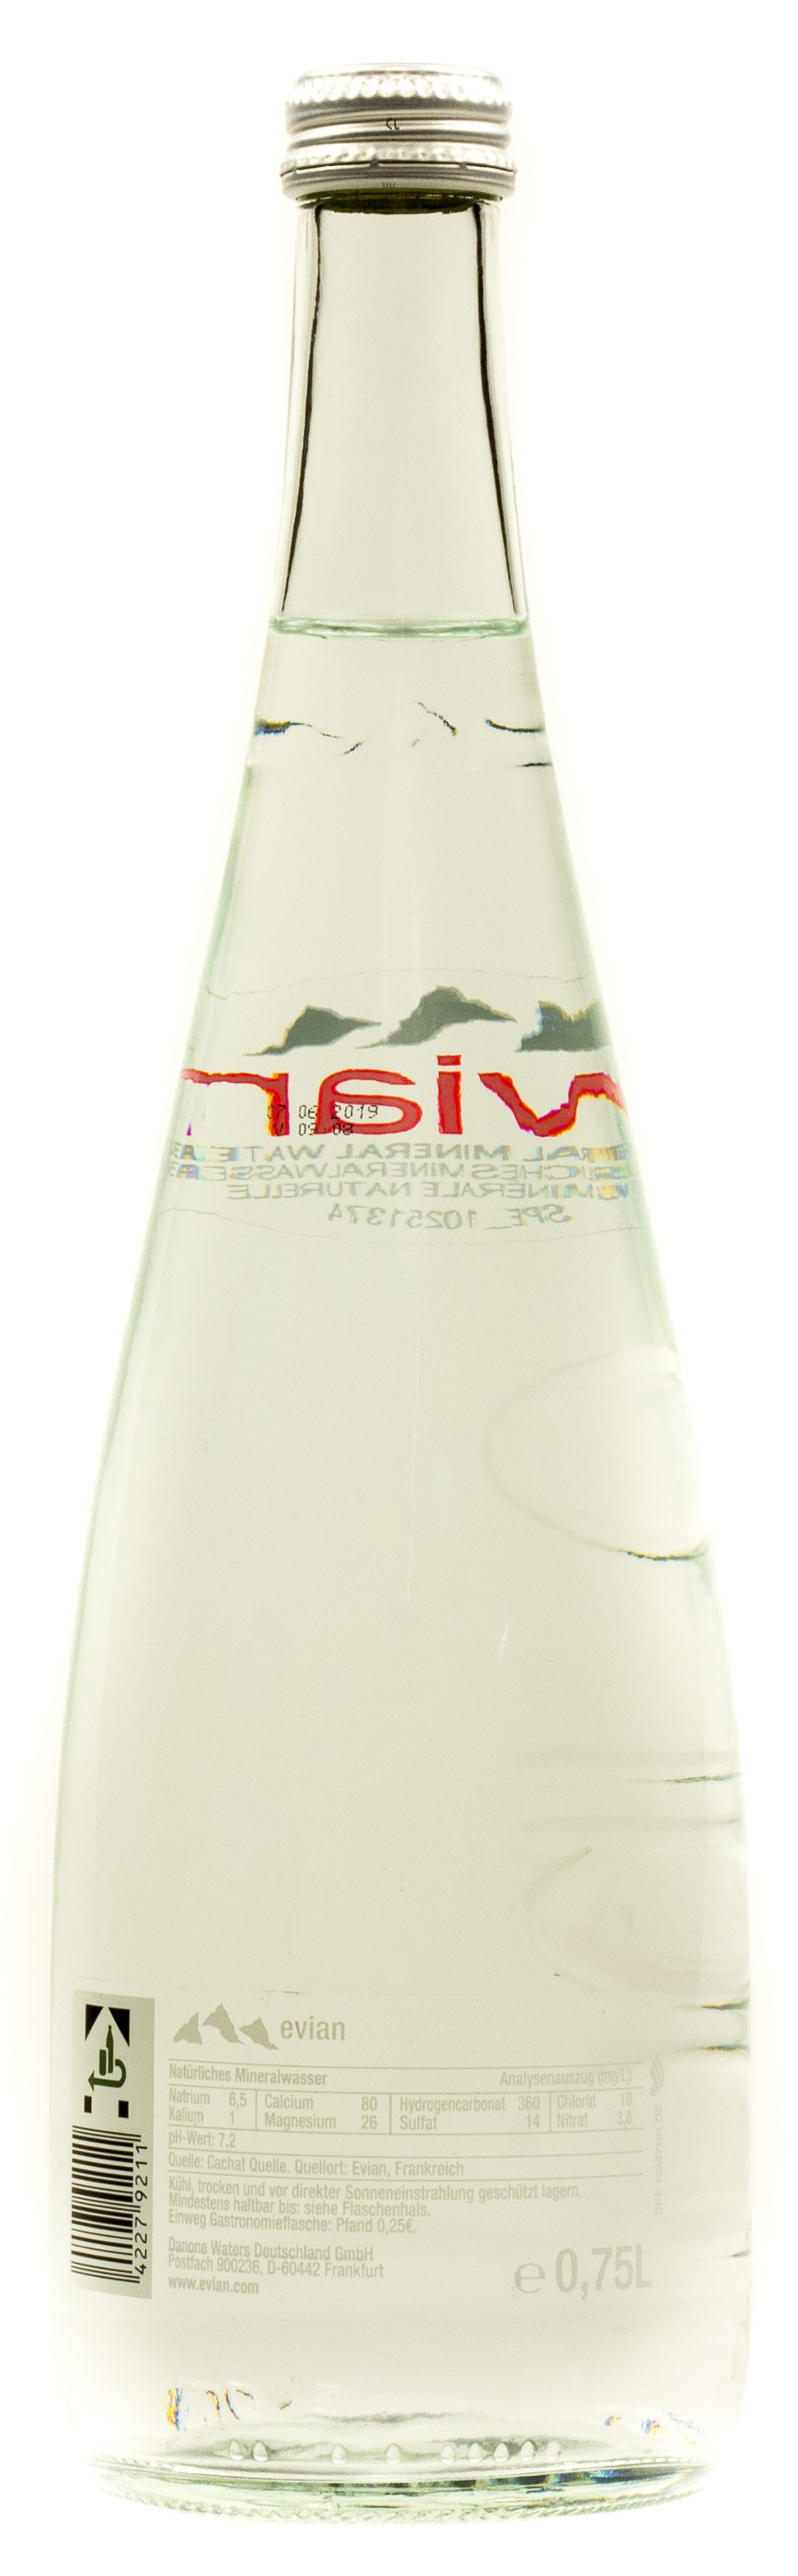 Evian Mineralwasser Naturelle Gastro Kasten 12 x 0,75 l Glas Einweg